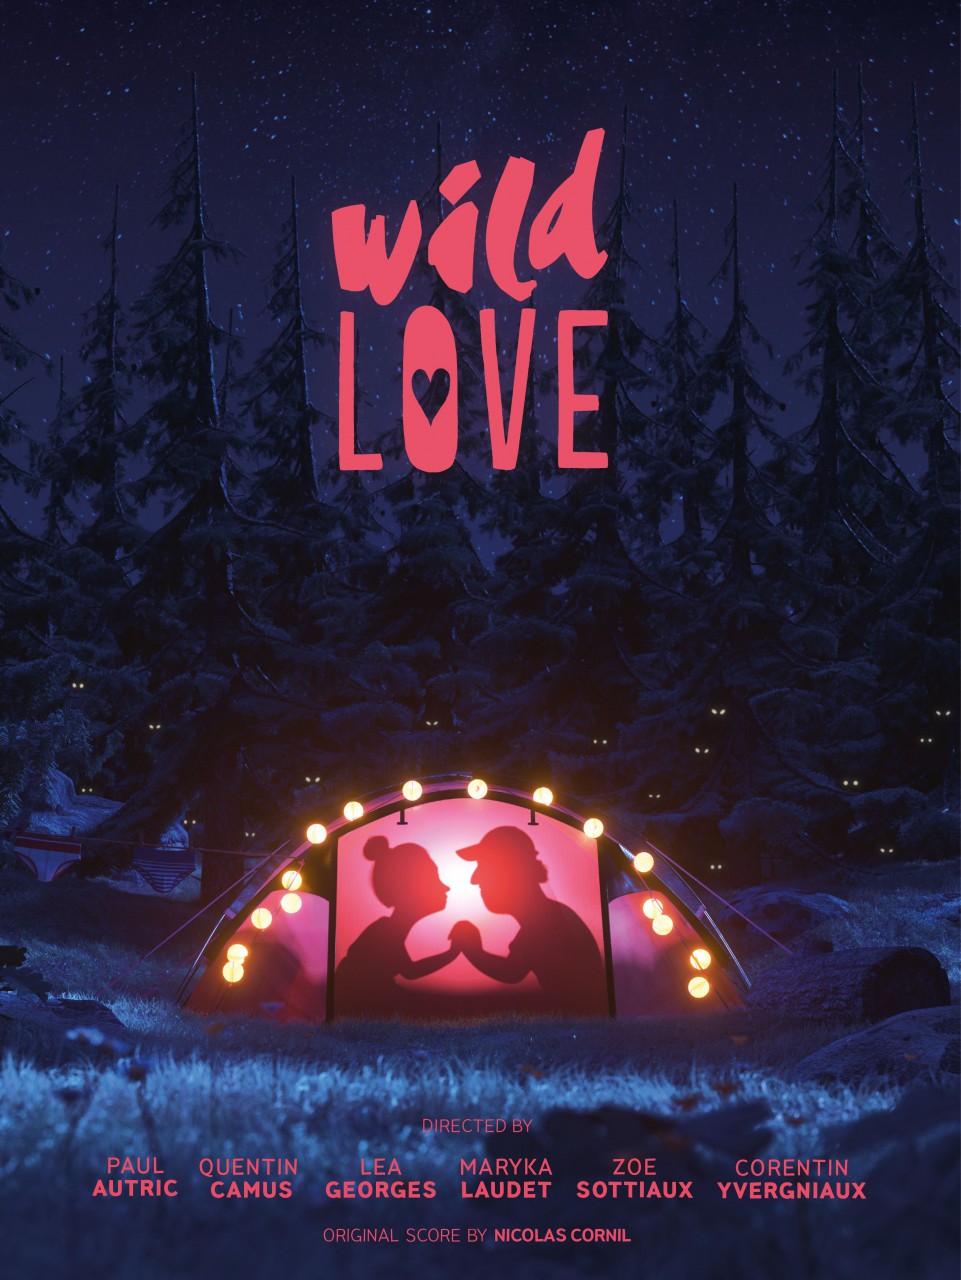 Wild love - 1